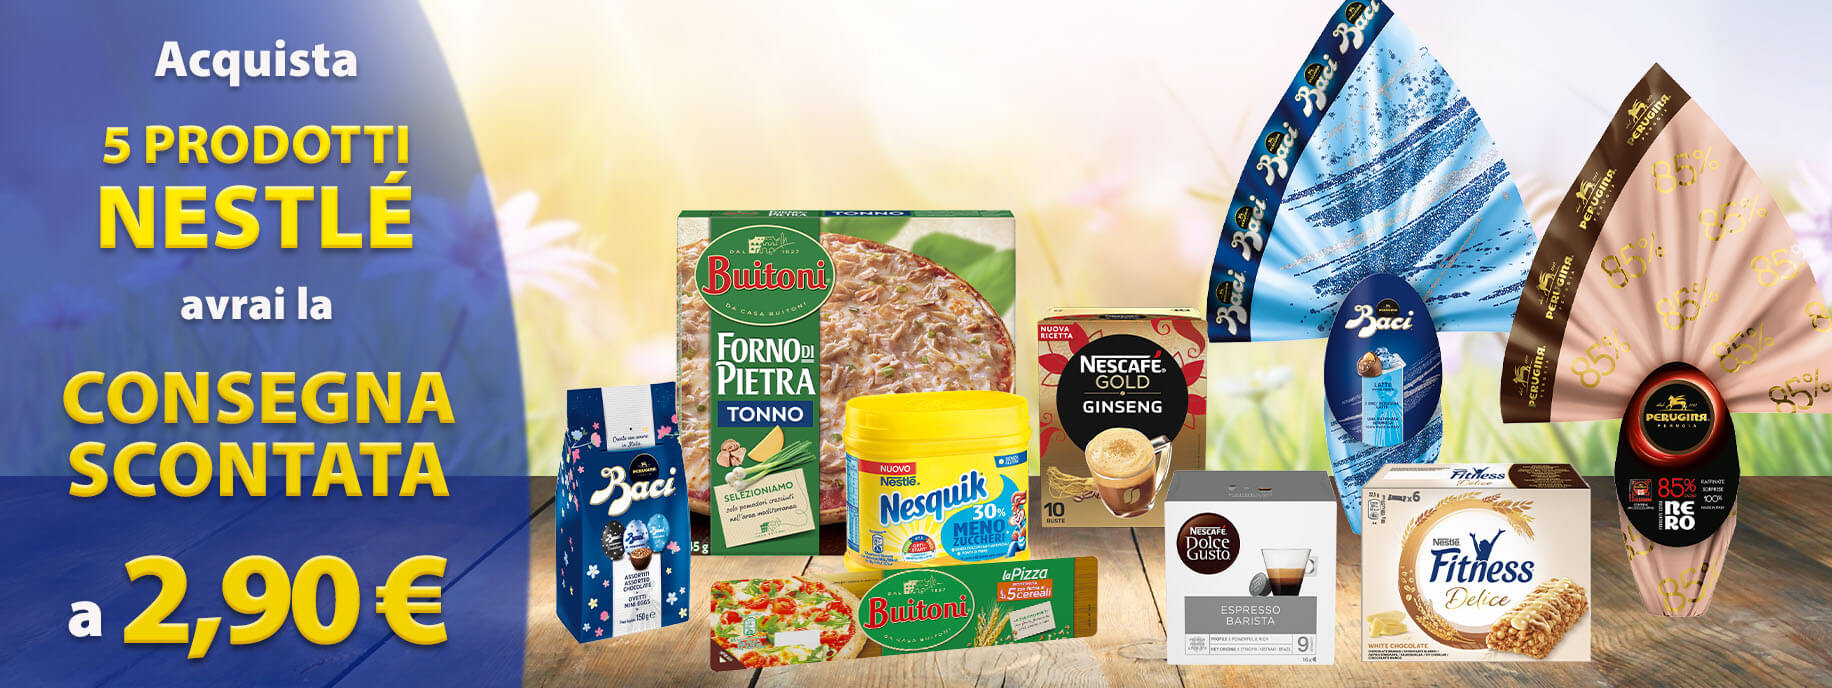 Concorso Esselungaacasa: con 5 prodotti Nestlé, consegna scontata